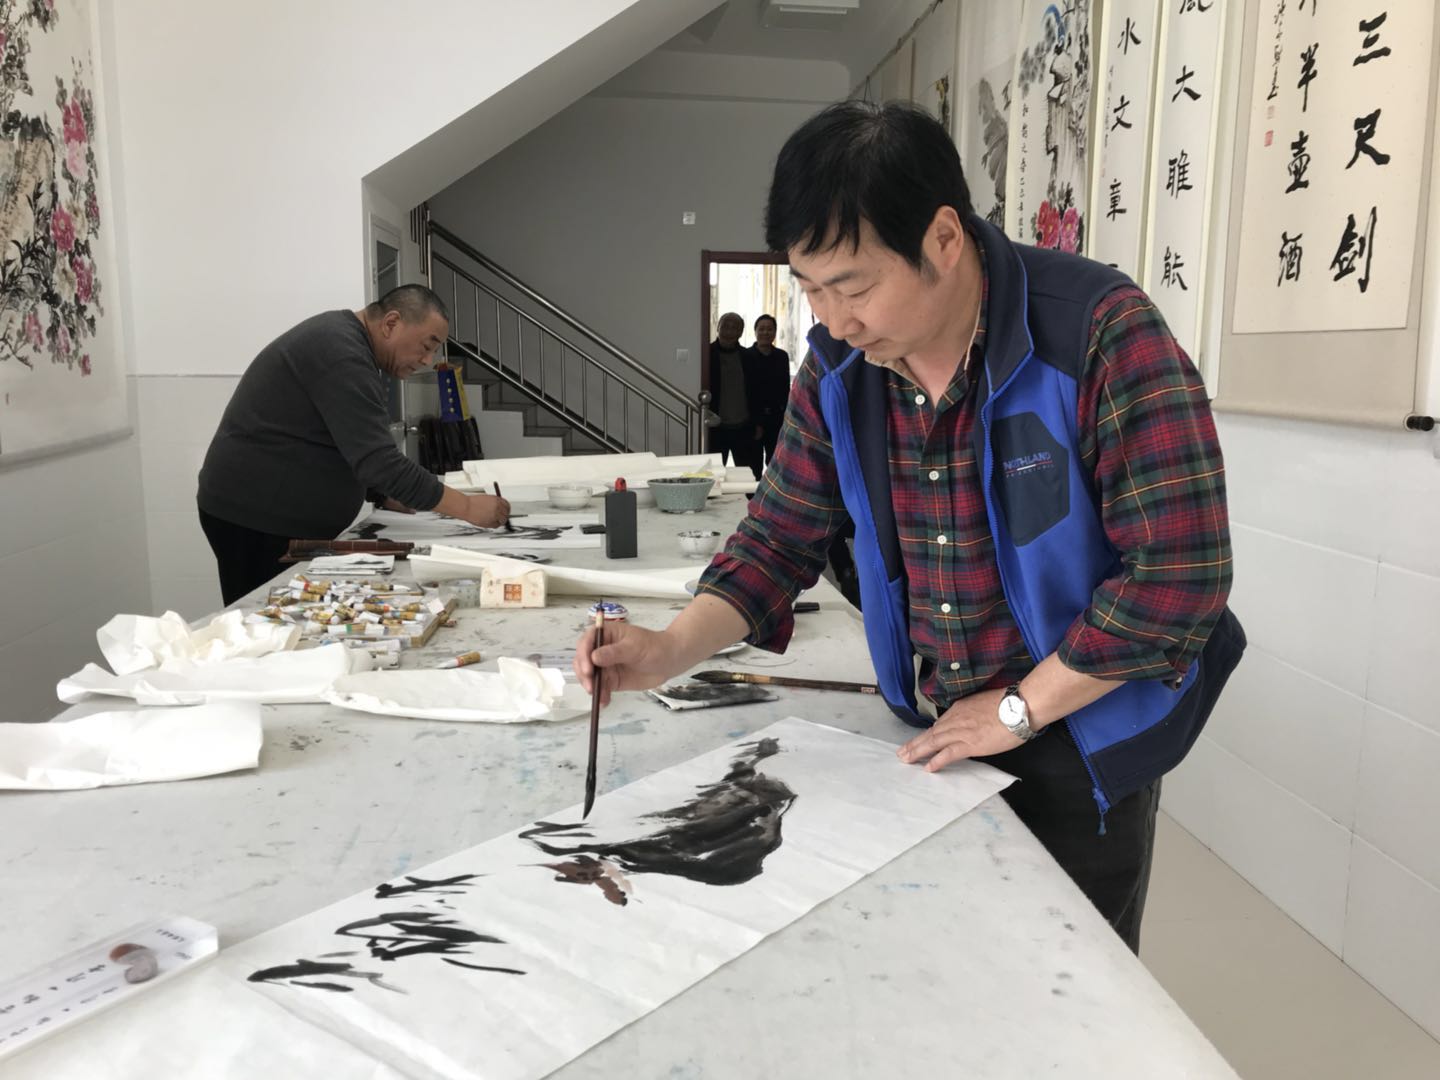 2019年3月20日江苏省花鸟研究会在钱乐缘秘书长的带领下，在南京六合横梁的创作基地举办笔会